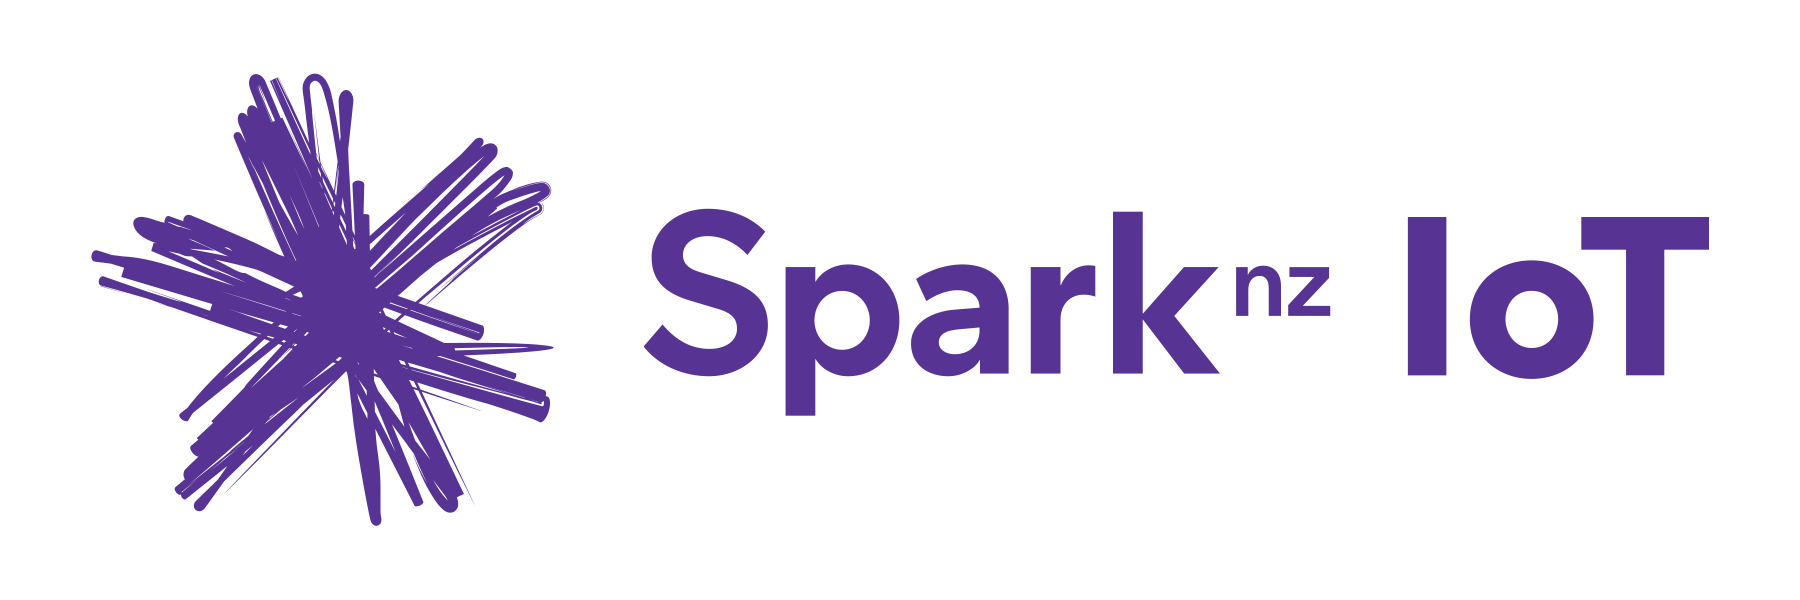 Spark IoT